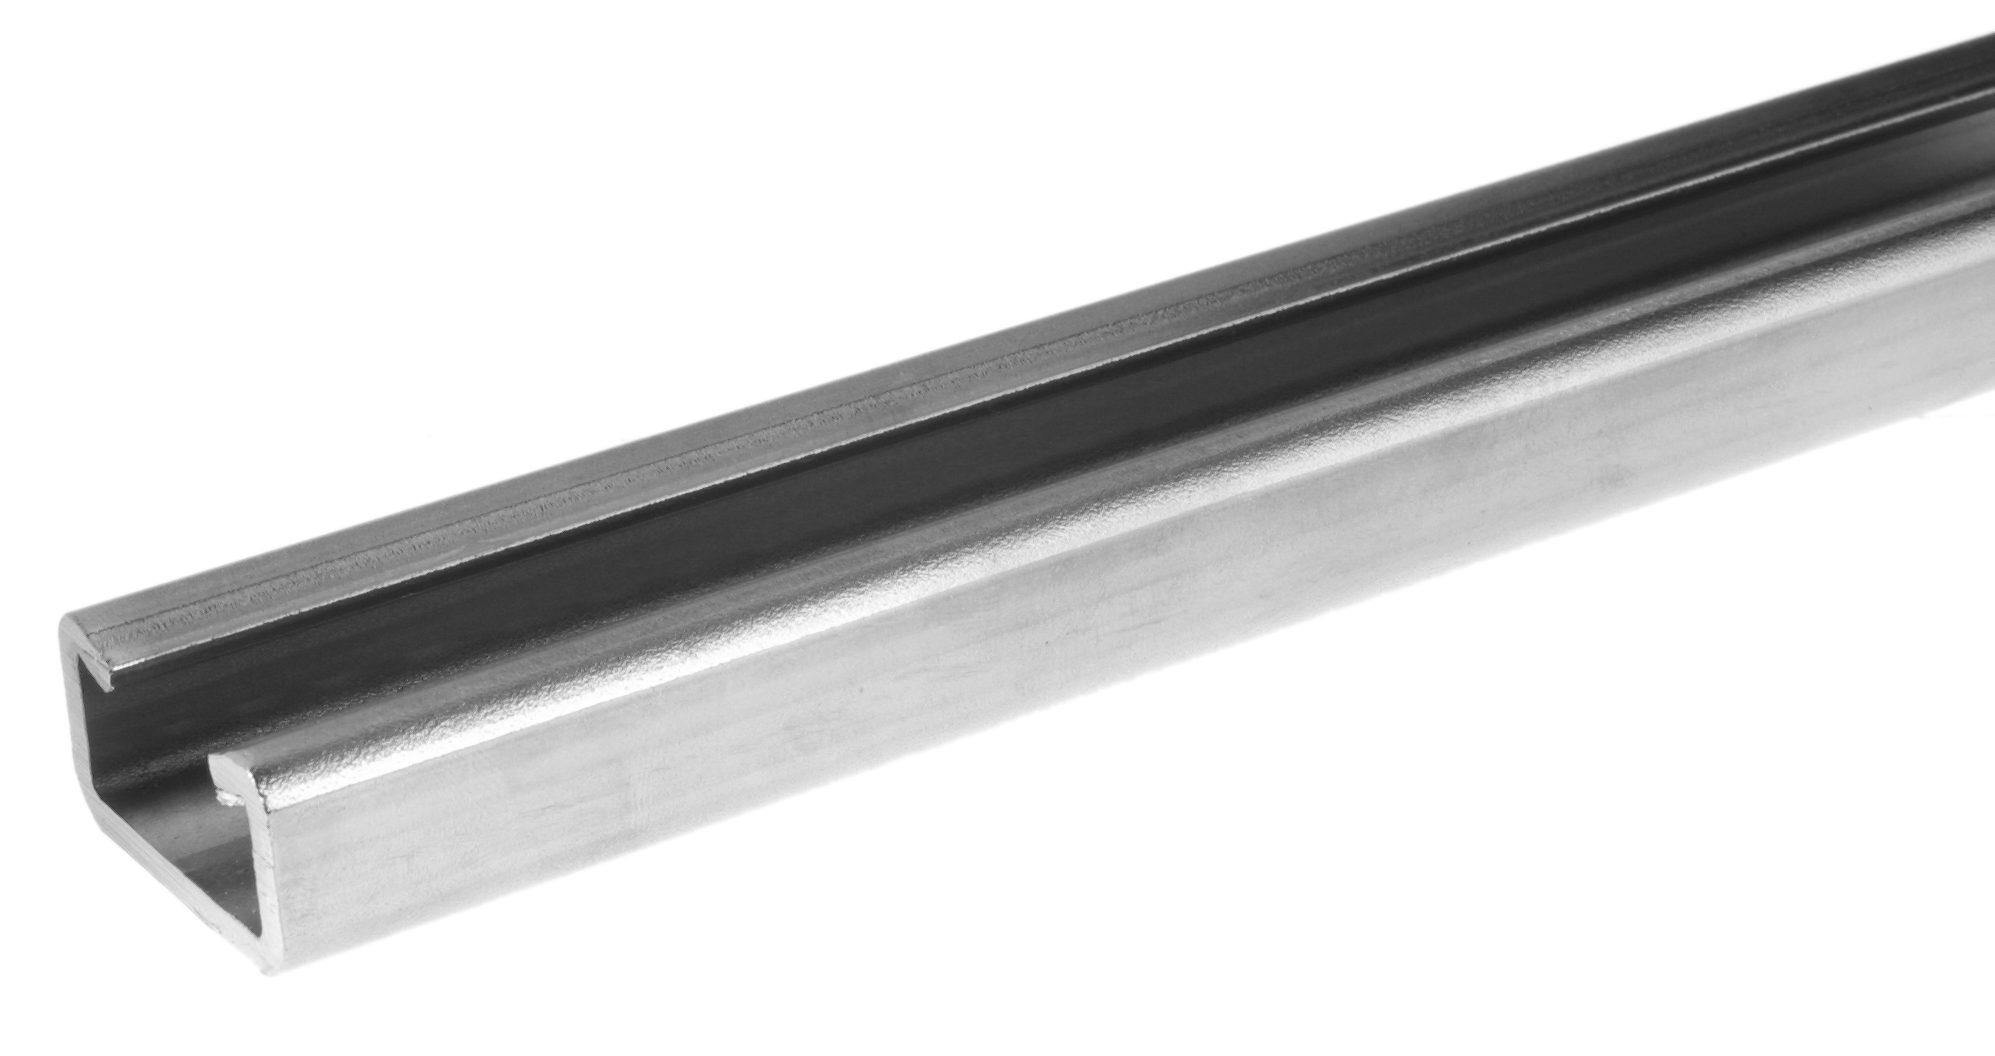 Aluminum alloy profile rail C30 3 m